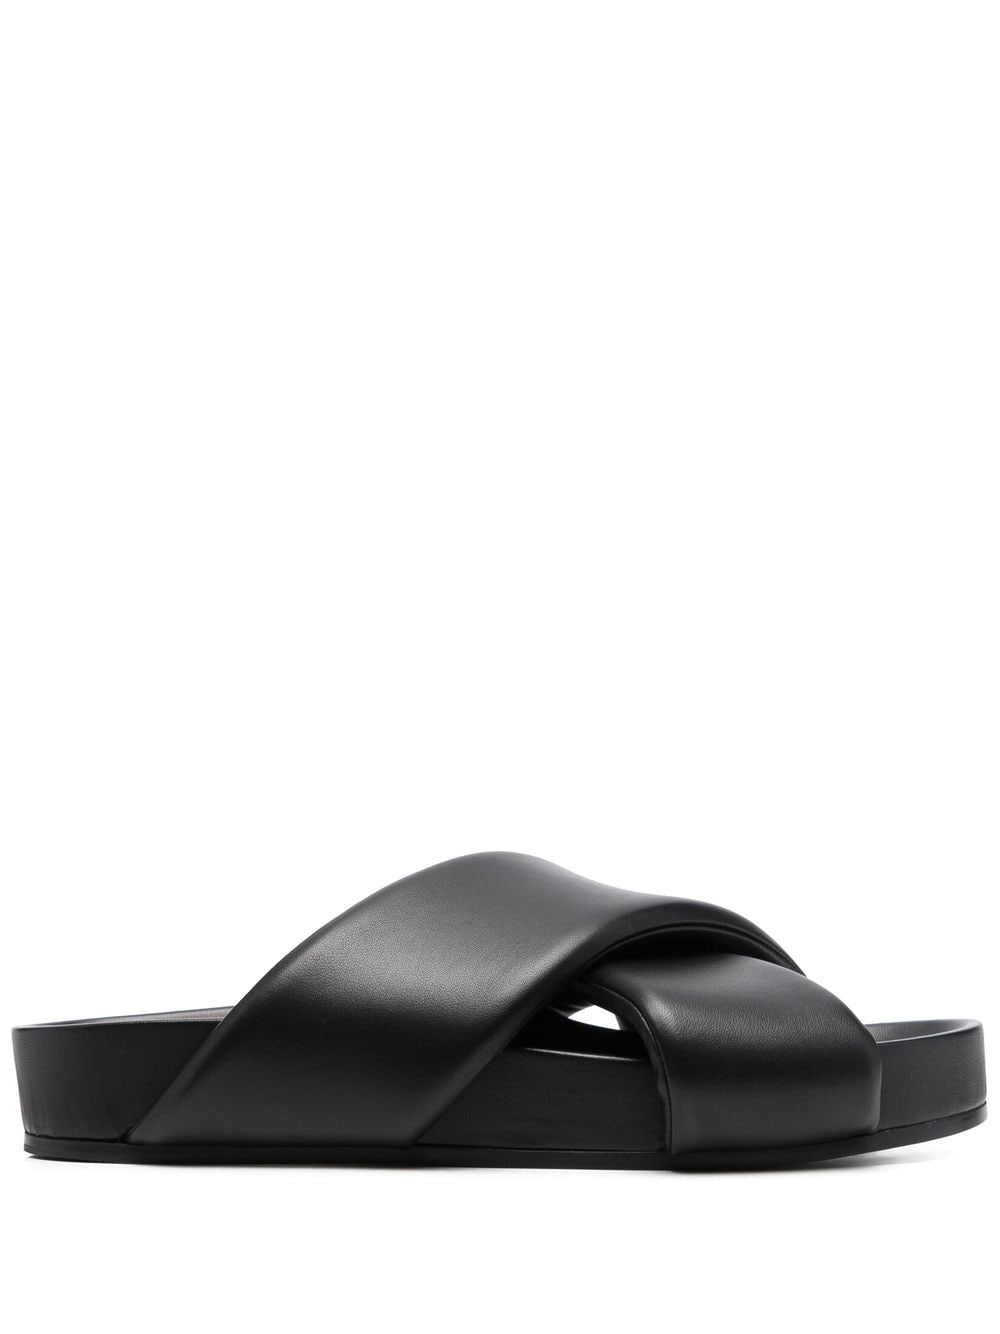 Jil Sander crossover-straps leather sandals - Black von Jil Sander